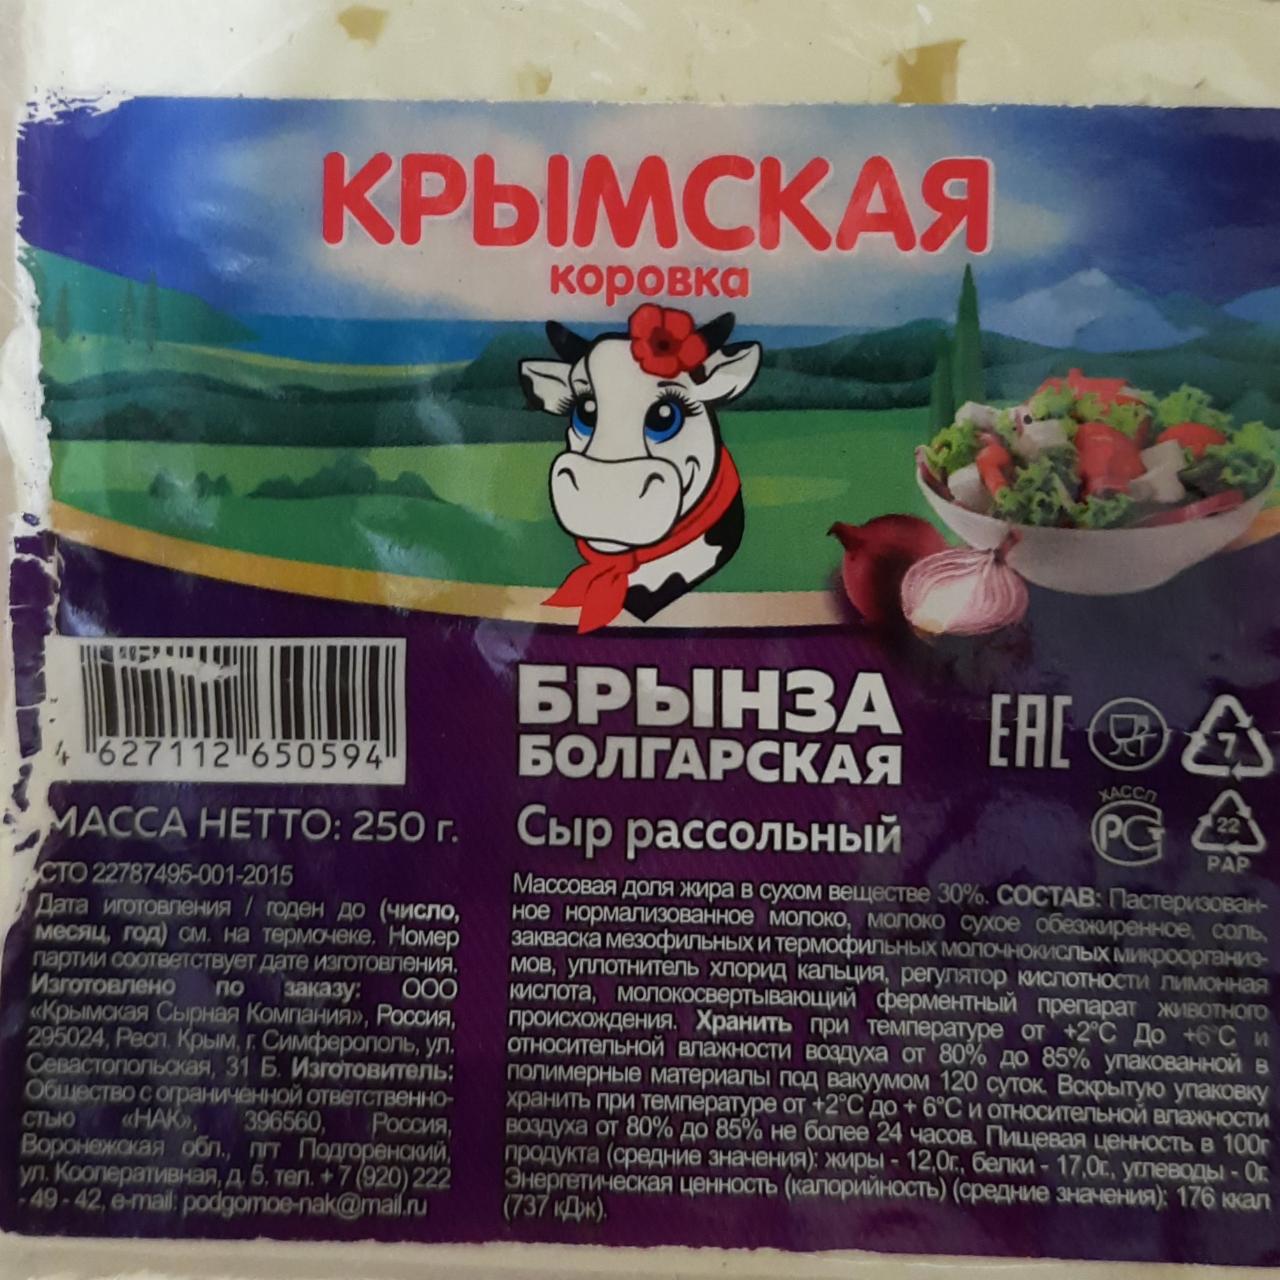 Фото - Брынза болгарская 30% Крымская коровка